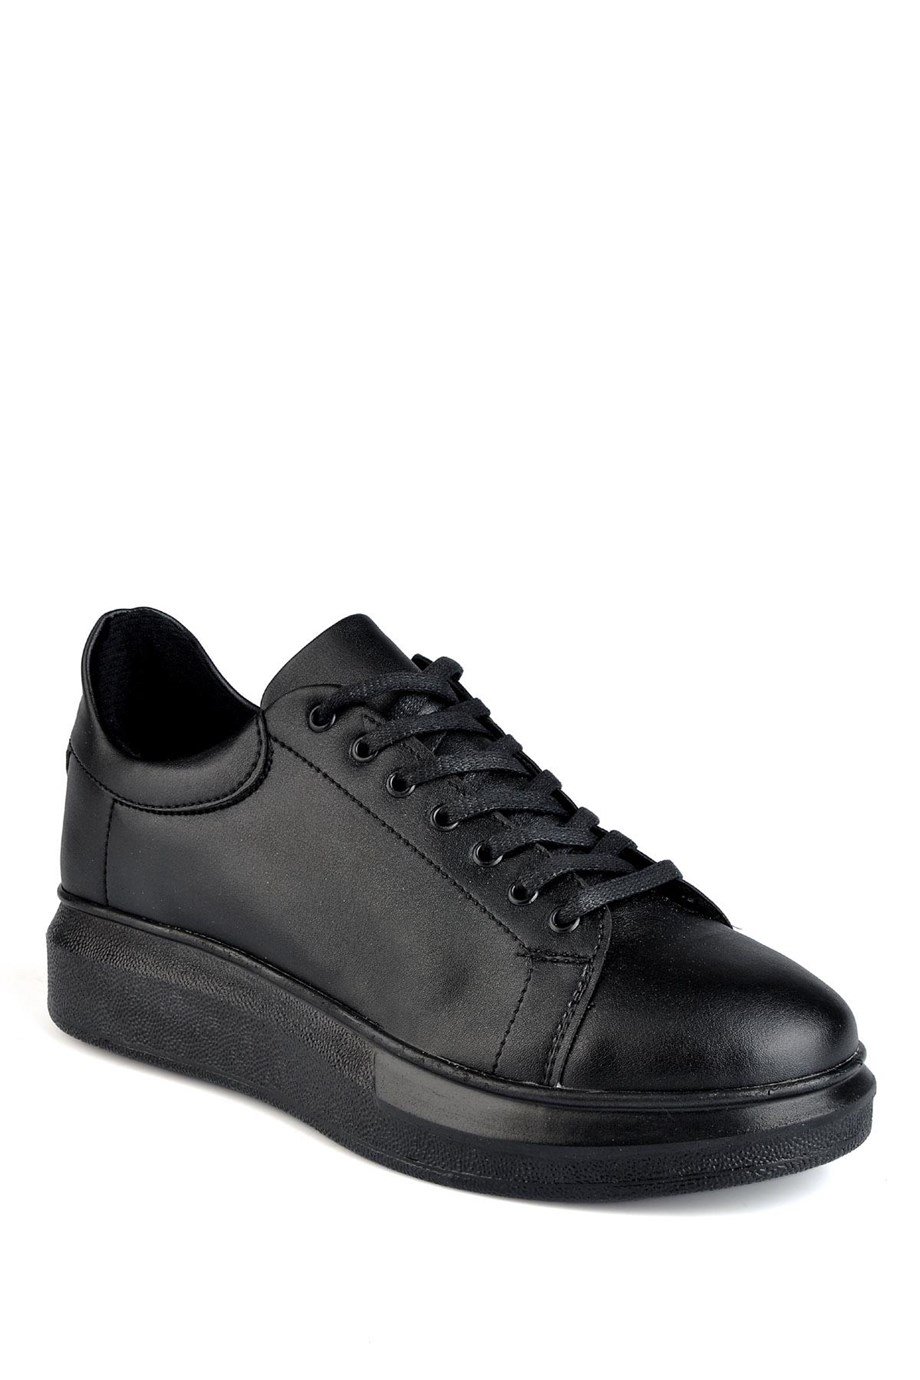 Siyah Sneaker Ayakkabı Modelleri ve İndirimli Ürünler - Konfor Ayakkabı